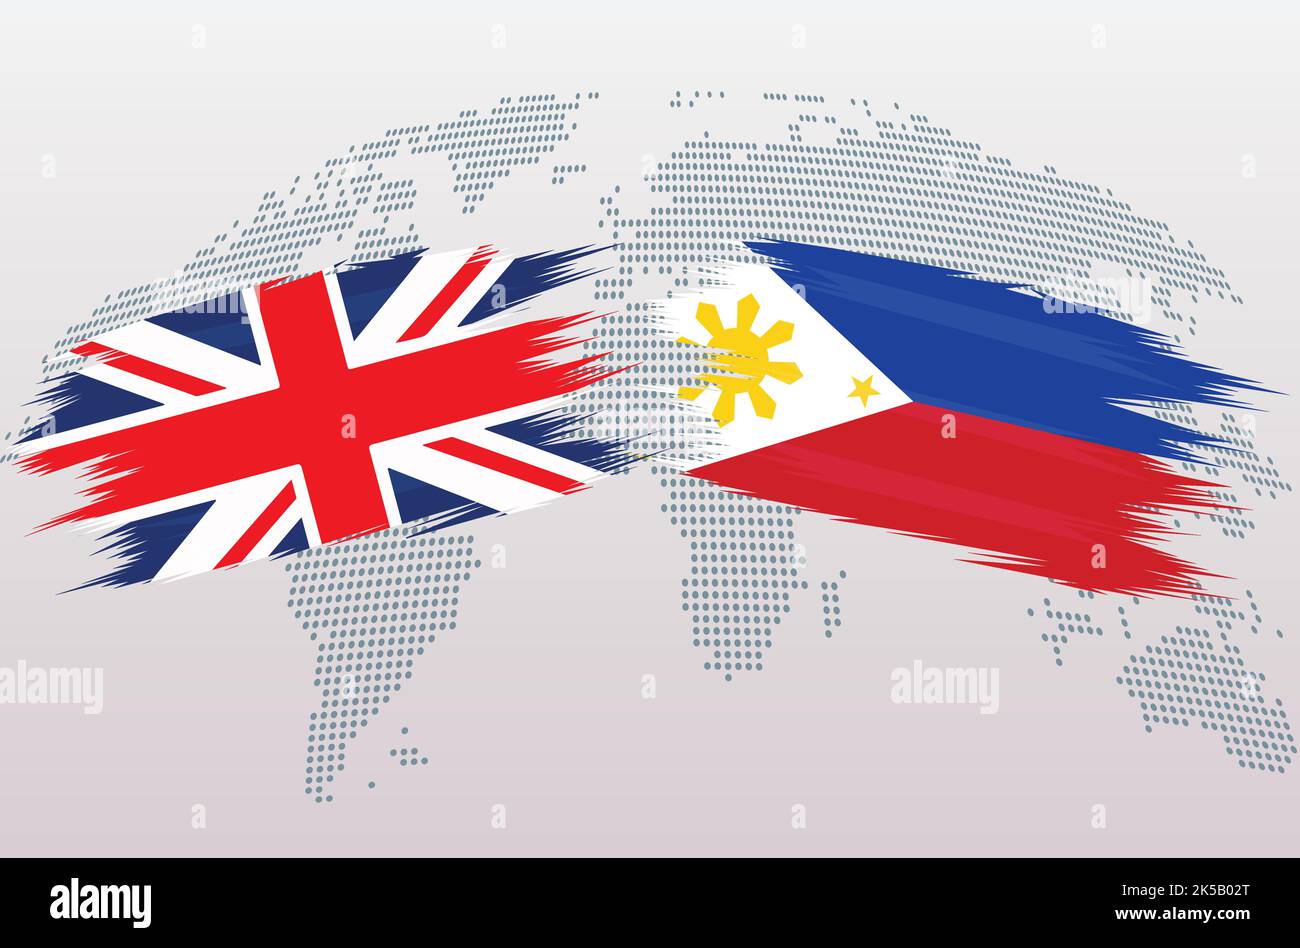 Britische Flaggen Großbritannien und Philippinen. Die Flaggen des Vereinigten Königreichs gegen die Philippinen, isoliert auf grauem Hintergrund der Weltkarte. Vektorgrafik. Stock Vektor